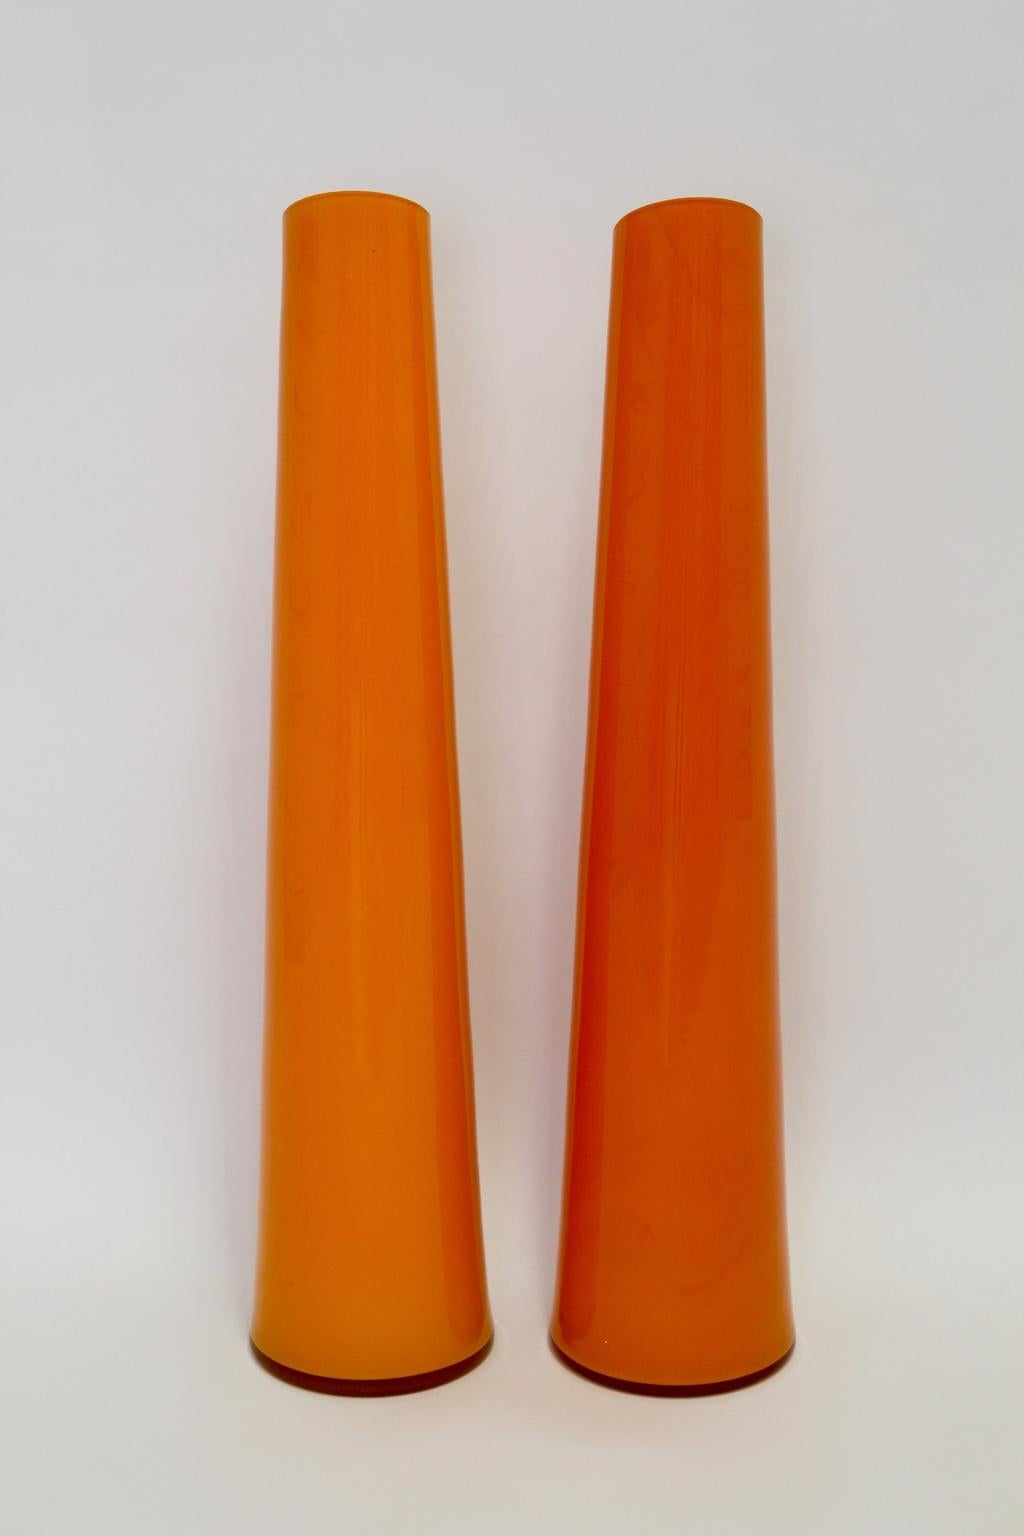 Modernistisches Duo, zwei orangefarbene Glasgefäße oder Vasen, 1990er Jahre. Italien.
Dieses Duett aus orangefarbenen Glasvasen eignet sich perfekt als mutiger Farbtupfer in Ihrer organischen Umgebung.
Sehr guter Vintage-Zustand
ca.